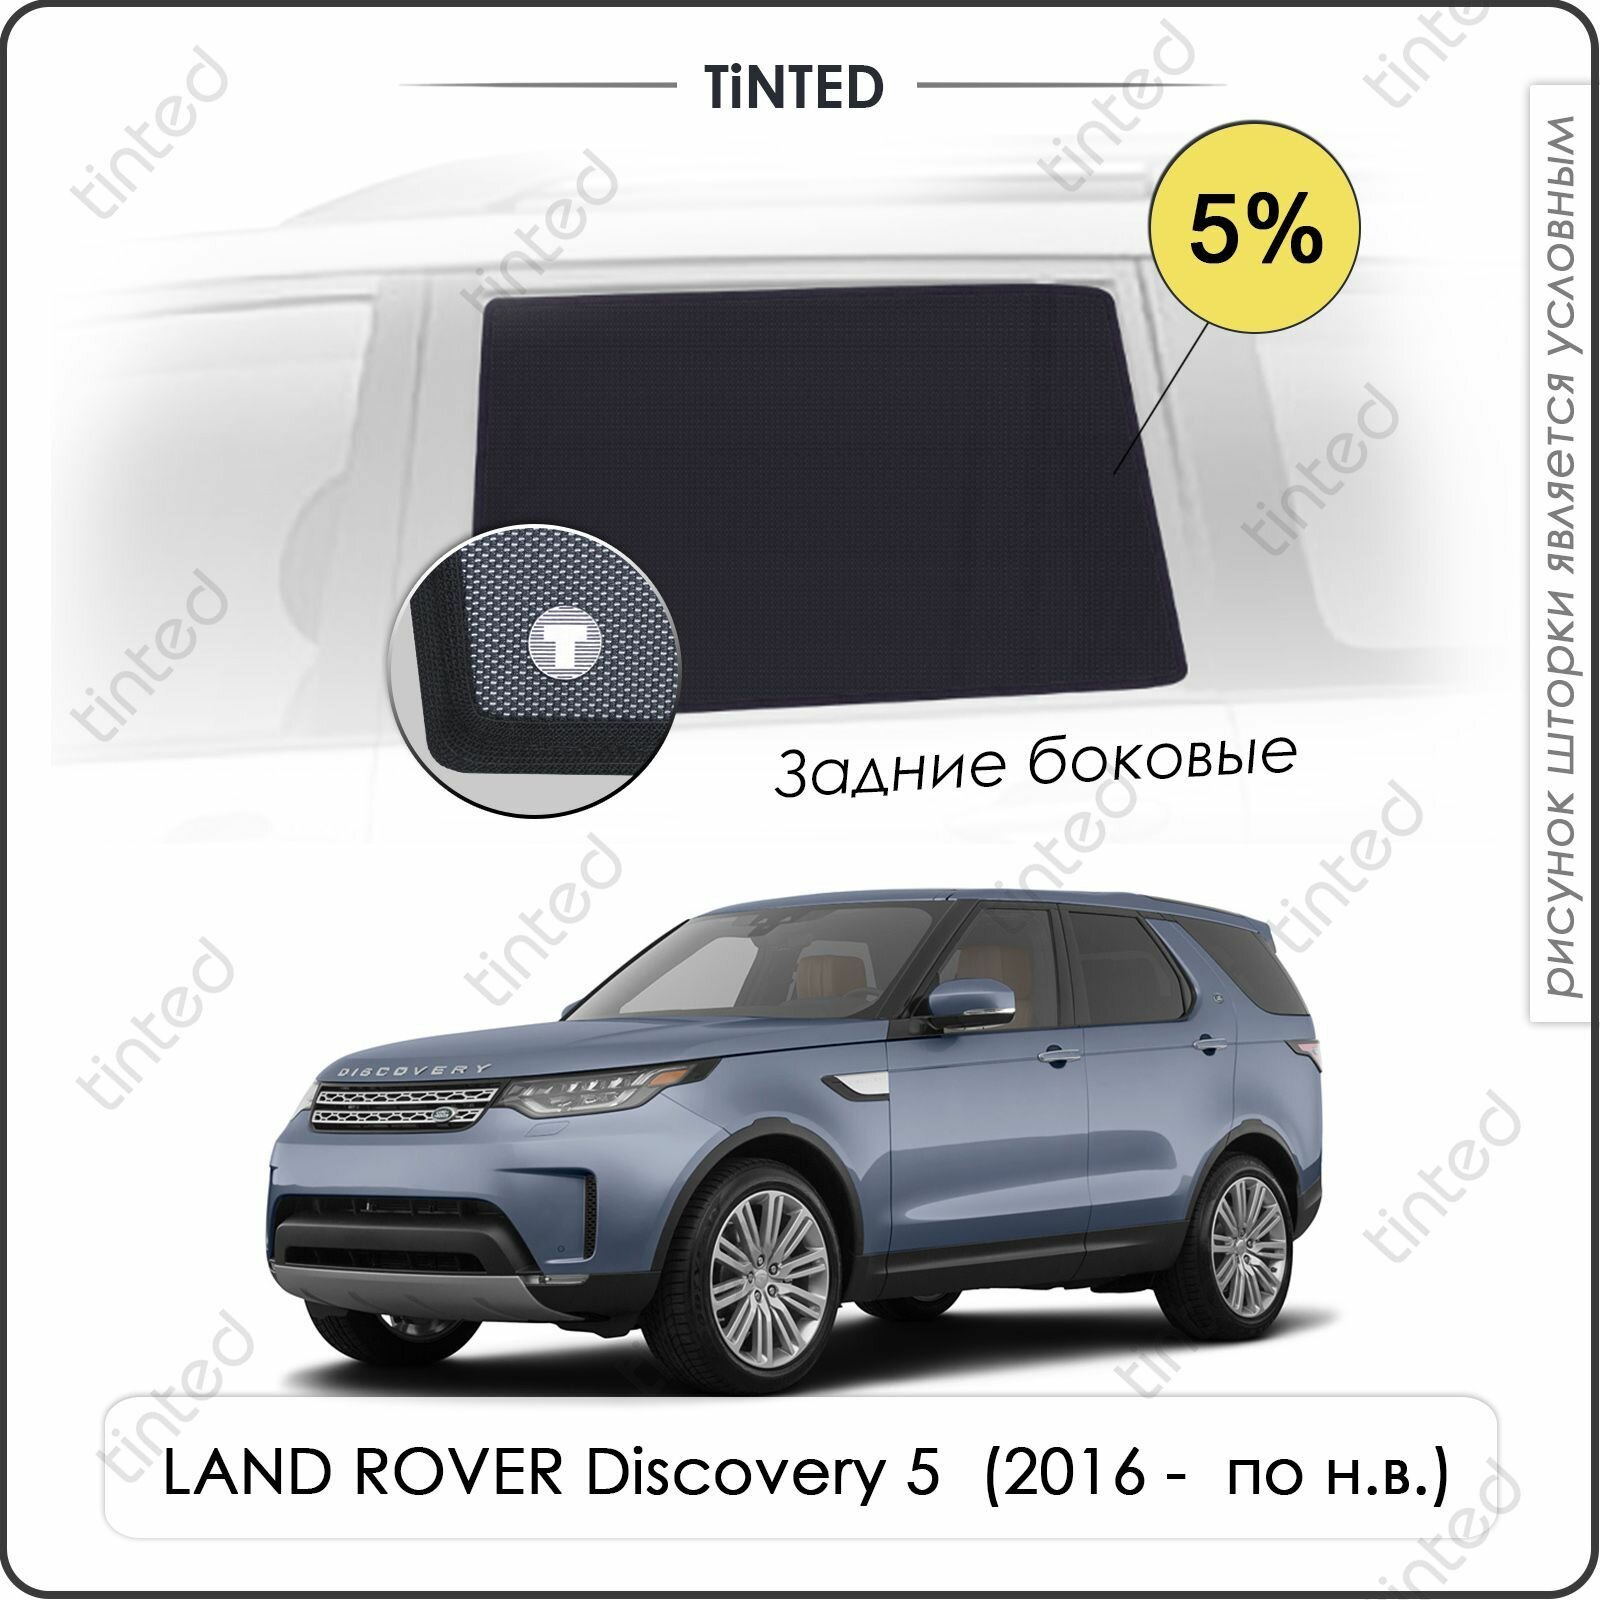 Шторки на автомобиль солнцезащитные LAND ROVER Discovery 5 Внедорожник 5дв. (2016 - по н. в.) на задние двери 5%, сетки от солнца в машину ленд ровер дискавери, Каркасные автошторки Premium